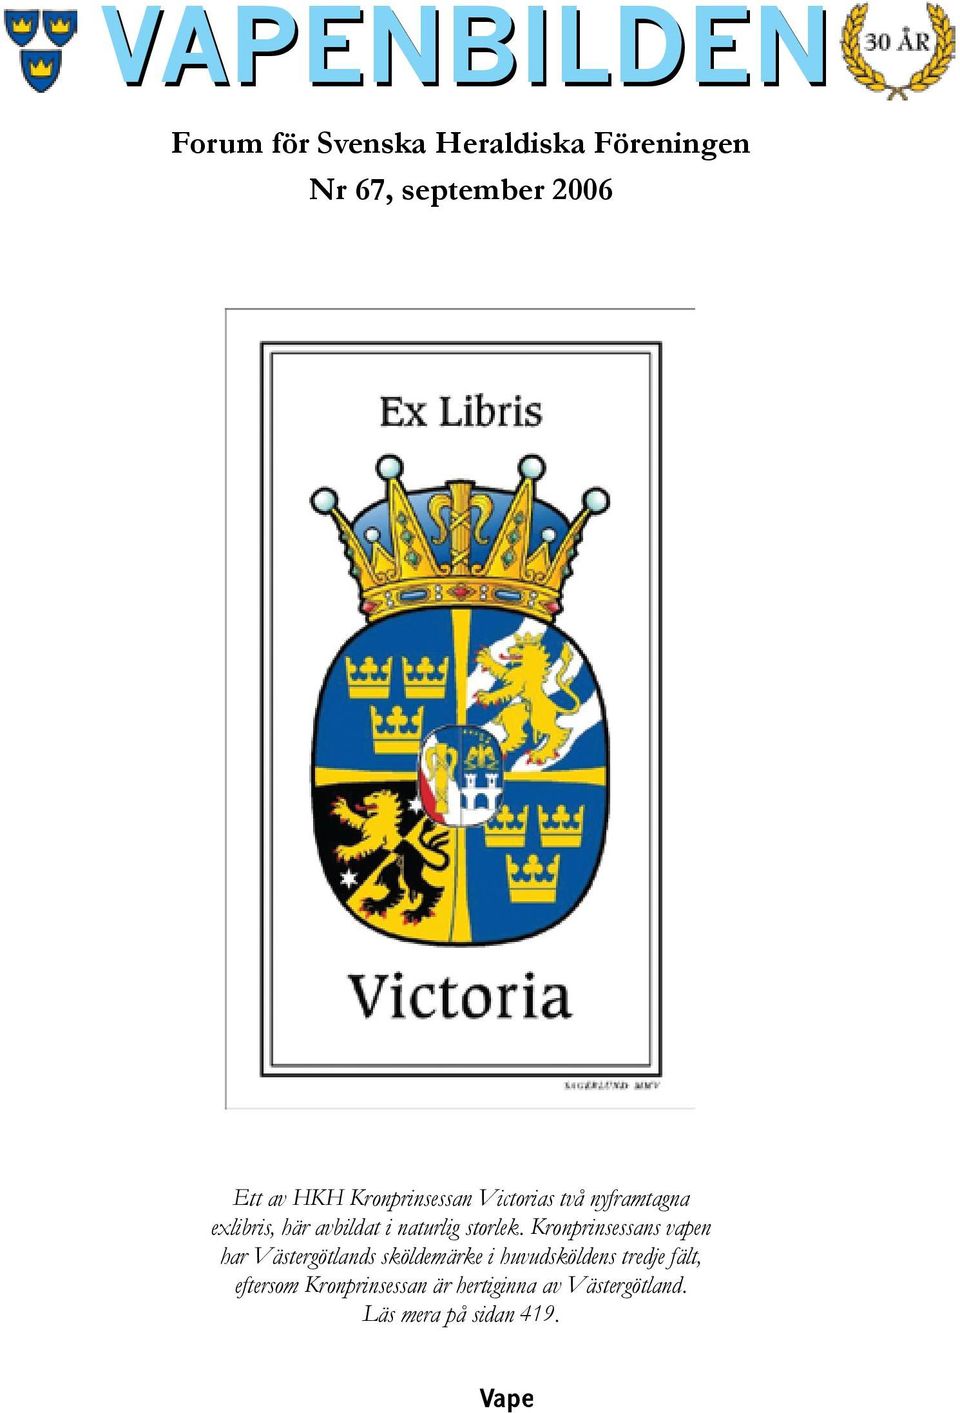 Kronprinsessans vapen har Västergötlands sköldemärke i huvudsköldens tredje fält,